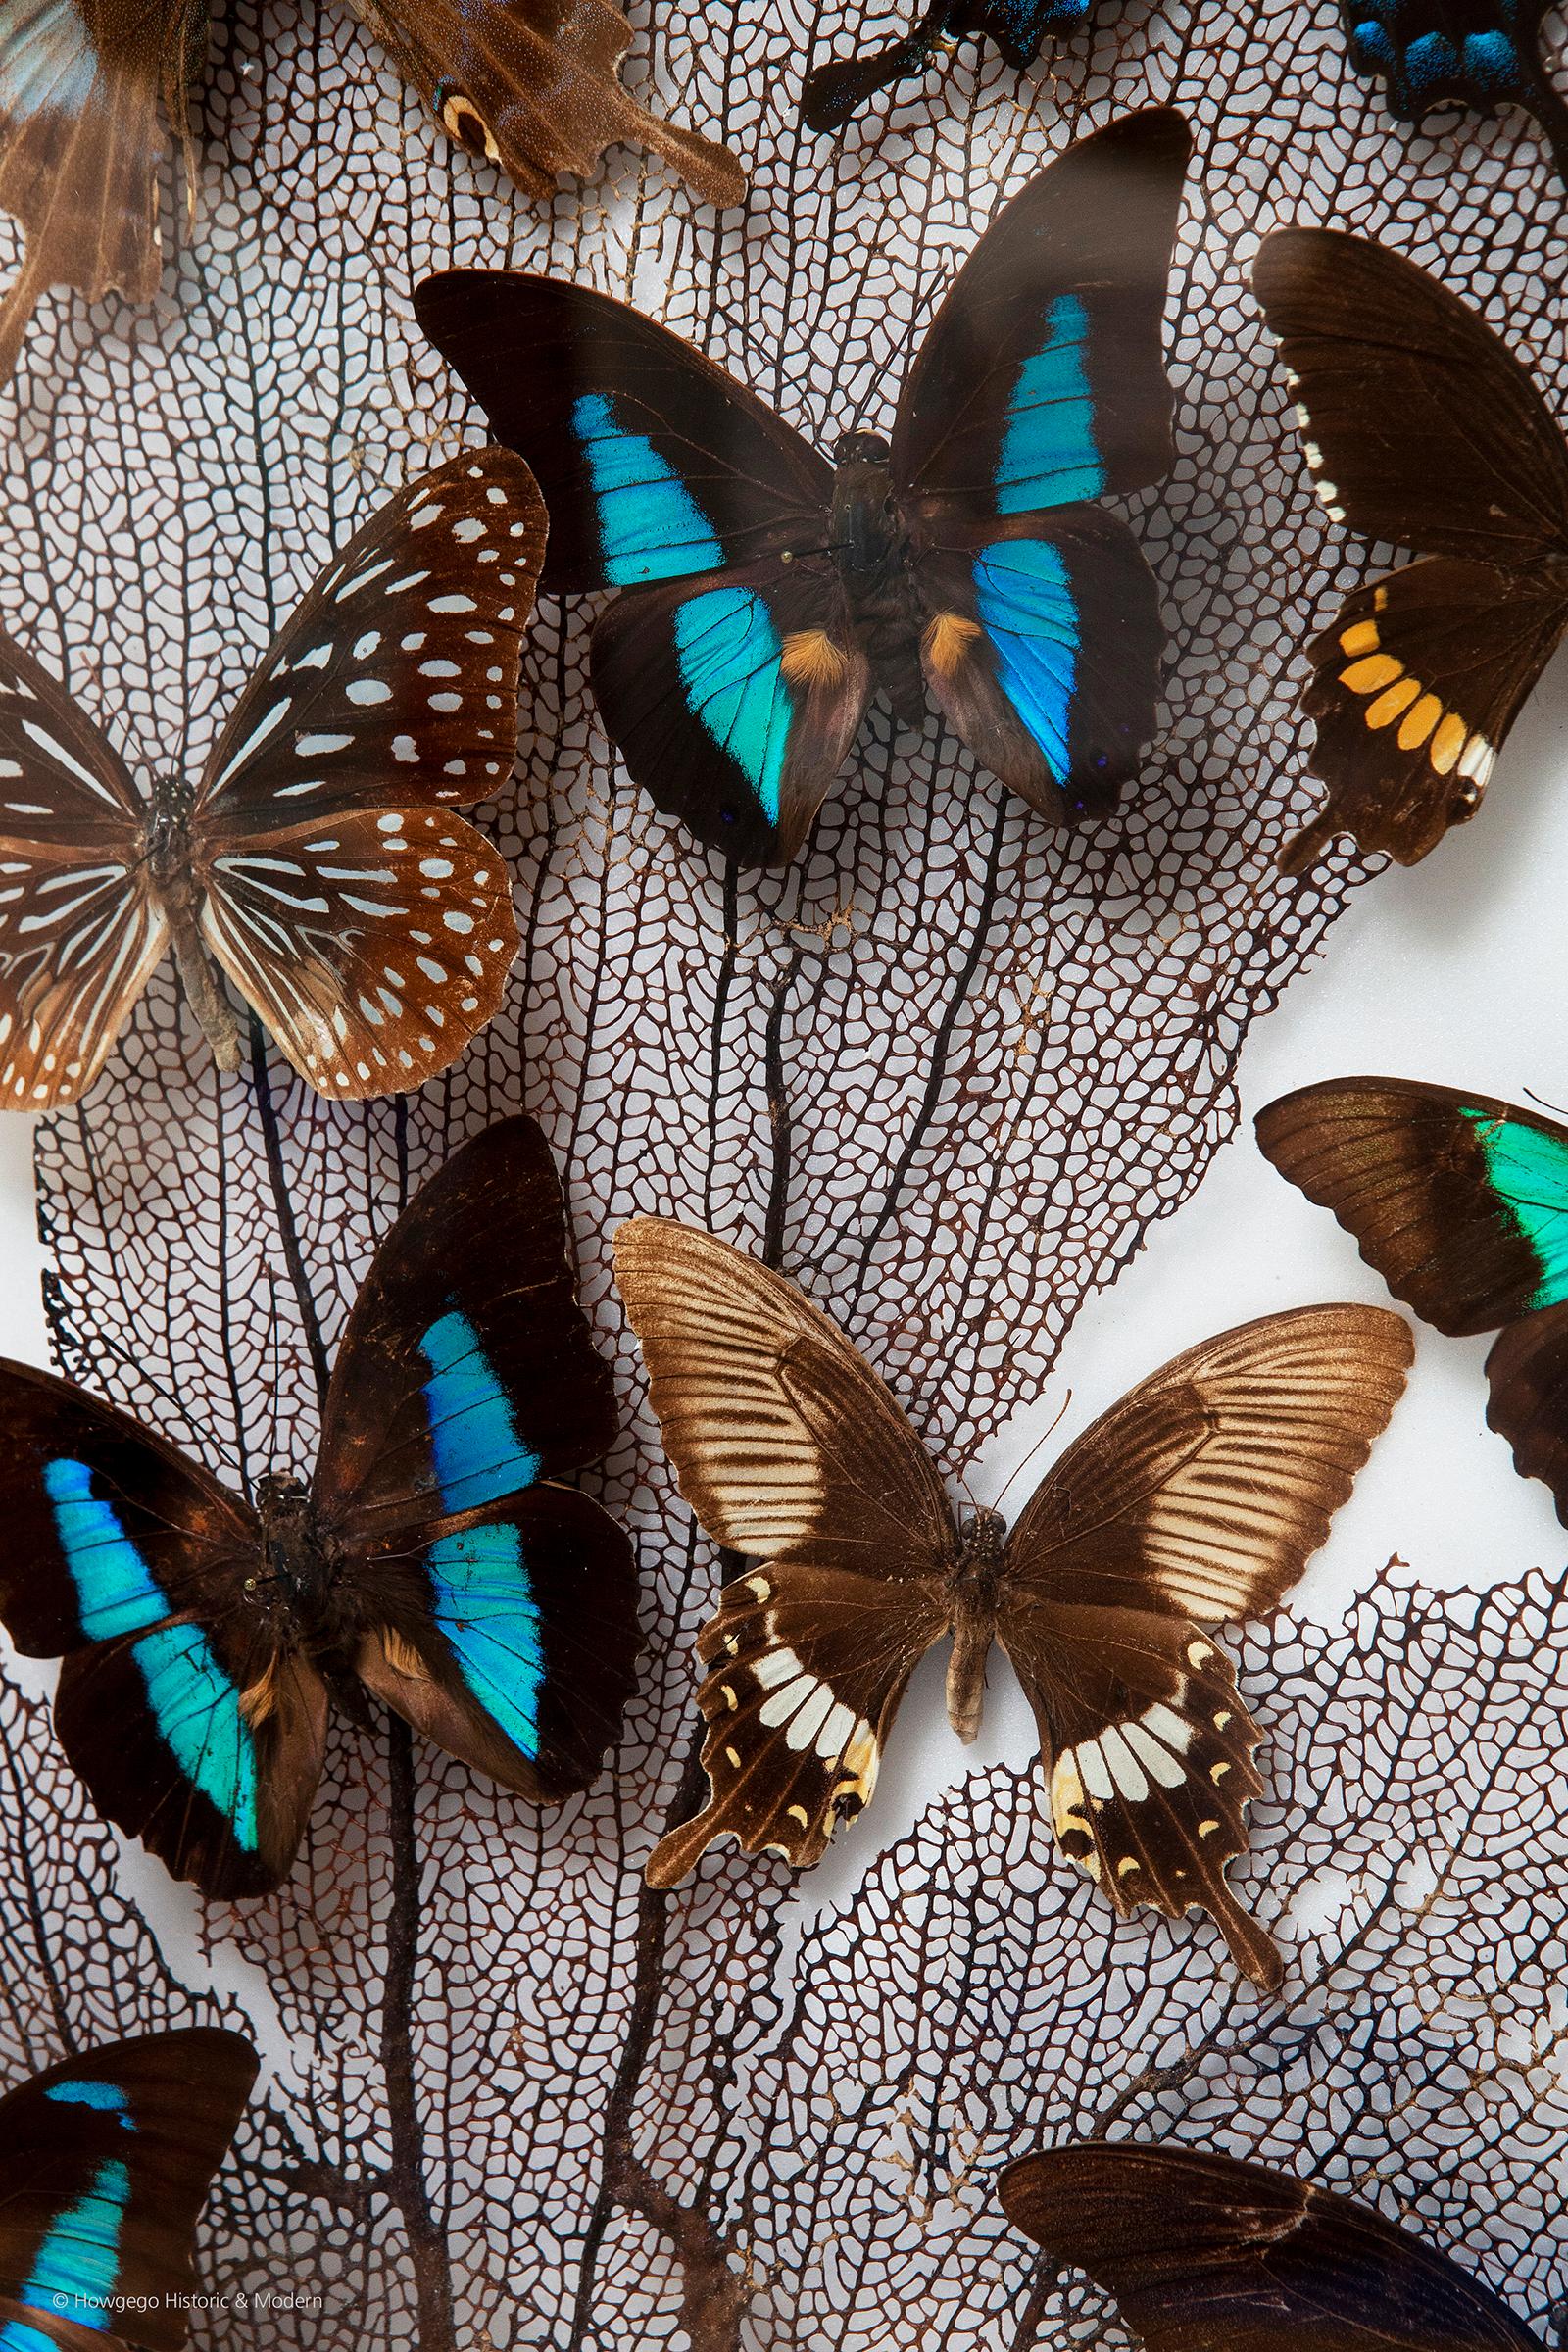 Une collection de spécimens de papillons et de coraux, vers 1920
Provenance : Collection privée, Paris

Je viens d'acheter des informations supplémentaires à suivre.

Mesures : Hauteur du cadre de la boîte : 50 cm
Largeur du cadre de la boîte